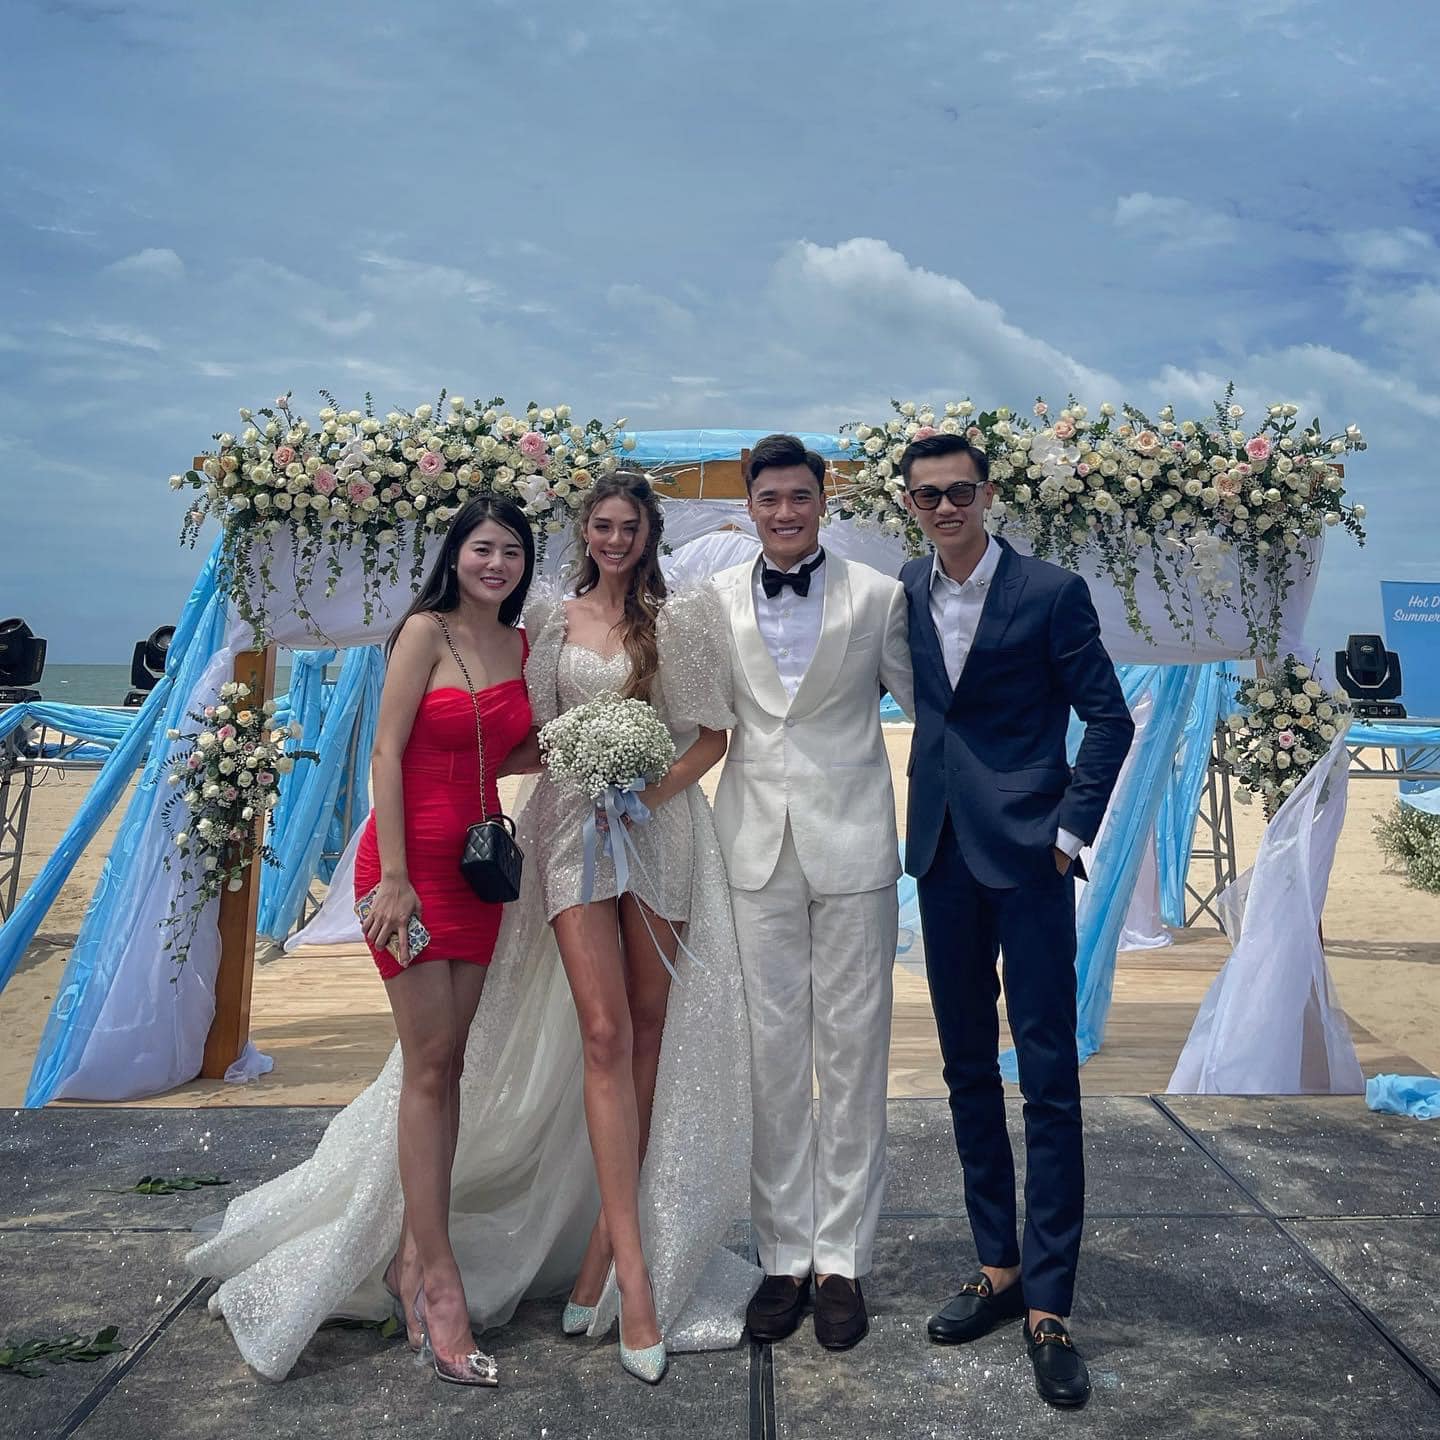 HOT: Thủ môn Bùi Tiến Dũng tổ chức đám cưới với bạn gái Tây, dàn tuyển thủ Việt Nam đều góp mặt chung vui - Ảnh 3